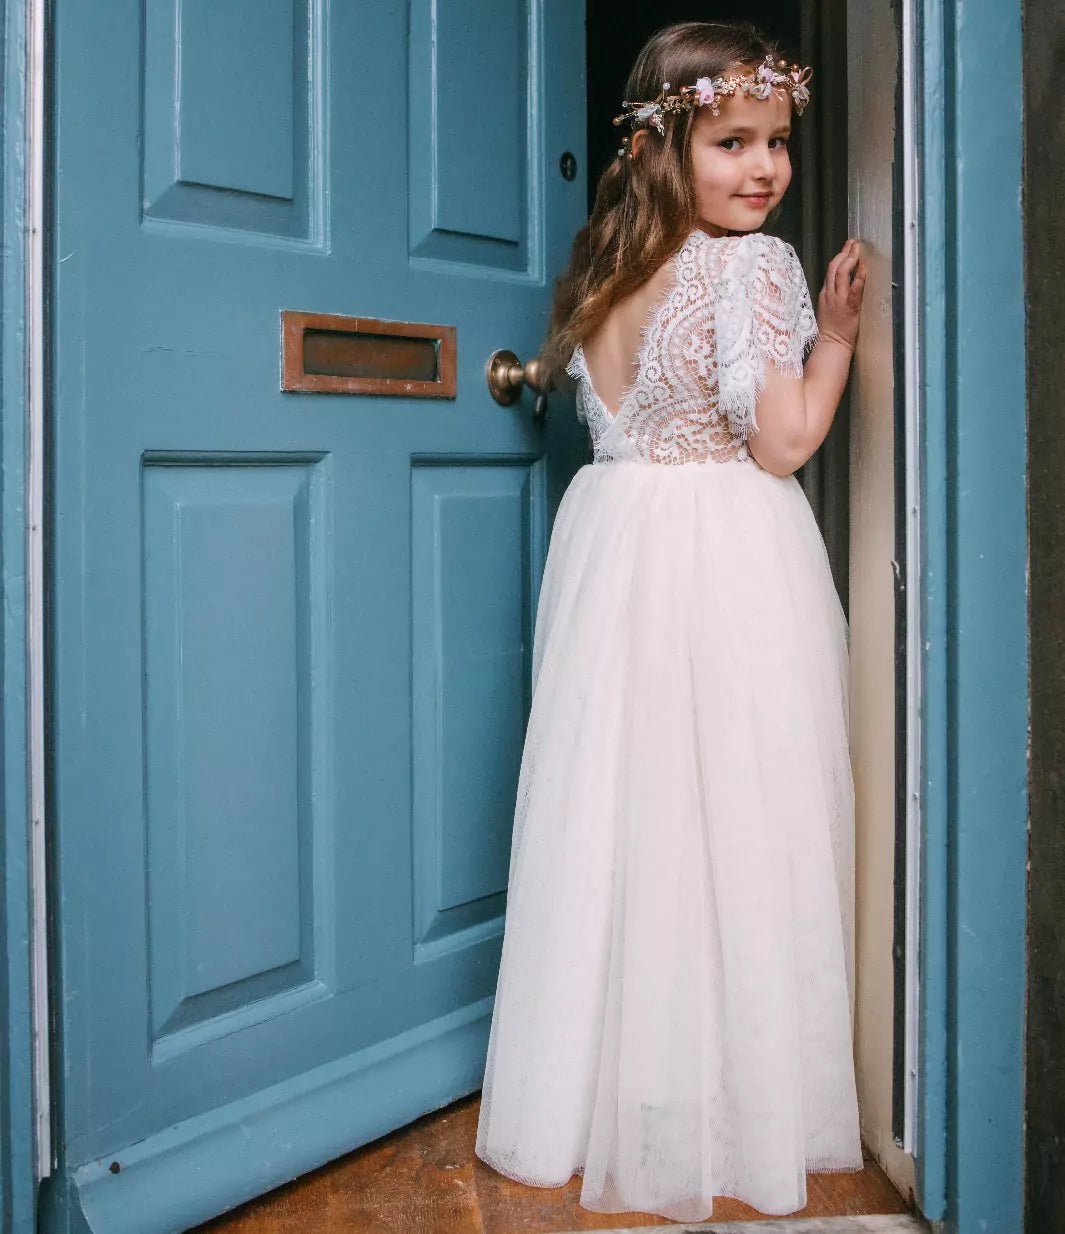 young girl in doorway